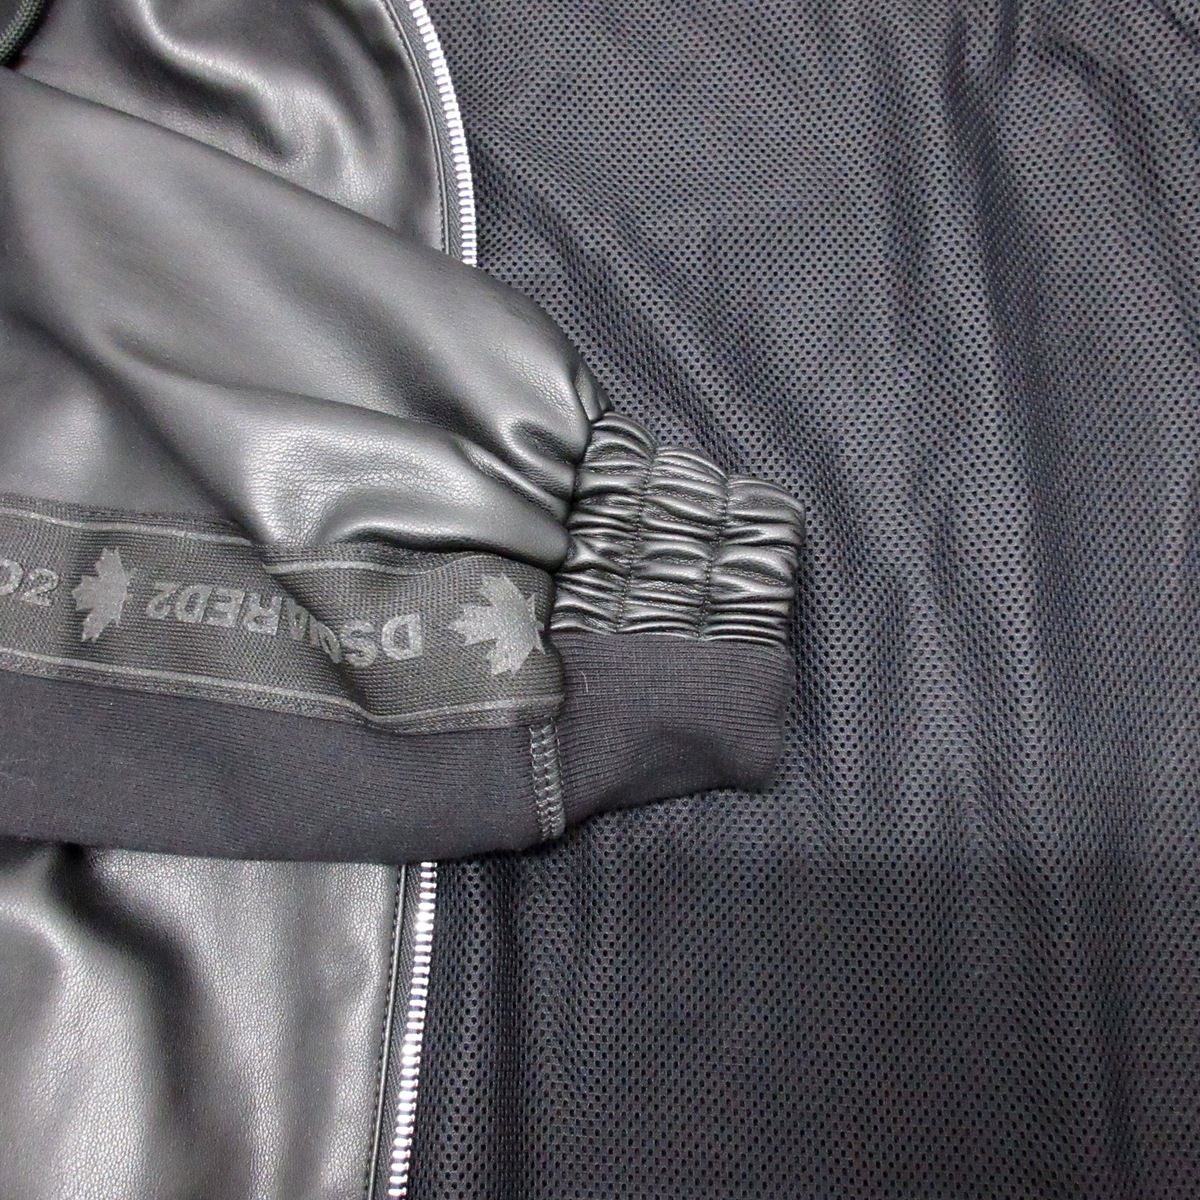 DSQUARED2(ディースクエアード) ブルゾン サイズ44 S メンズ美品 - 黒 長袖/一部フェイクレザー/春・秋物 綿、フェイクレザー